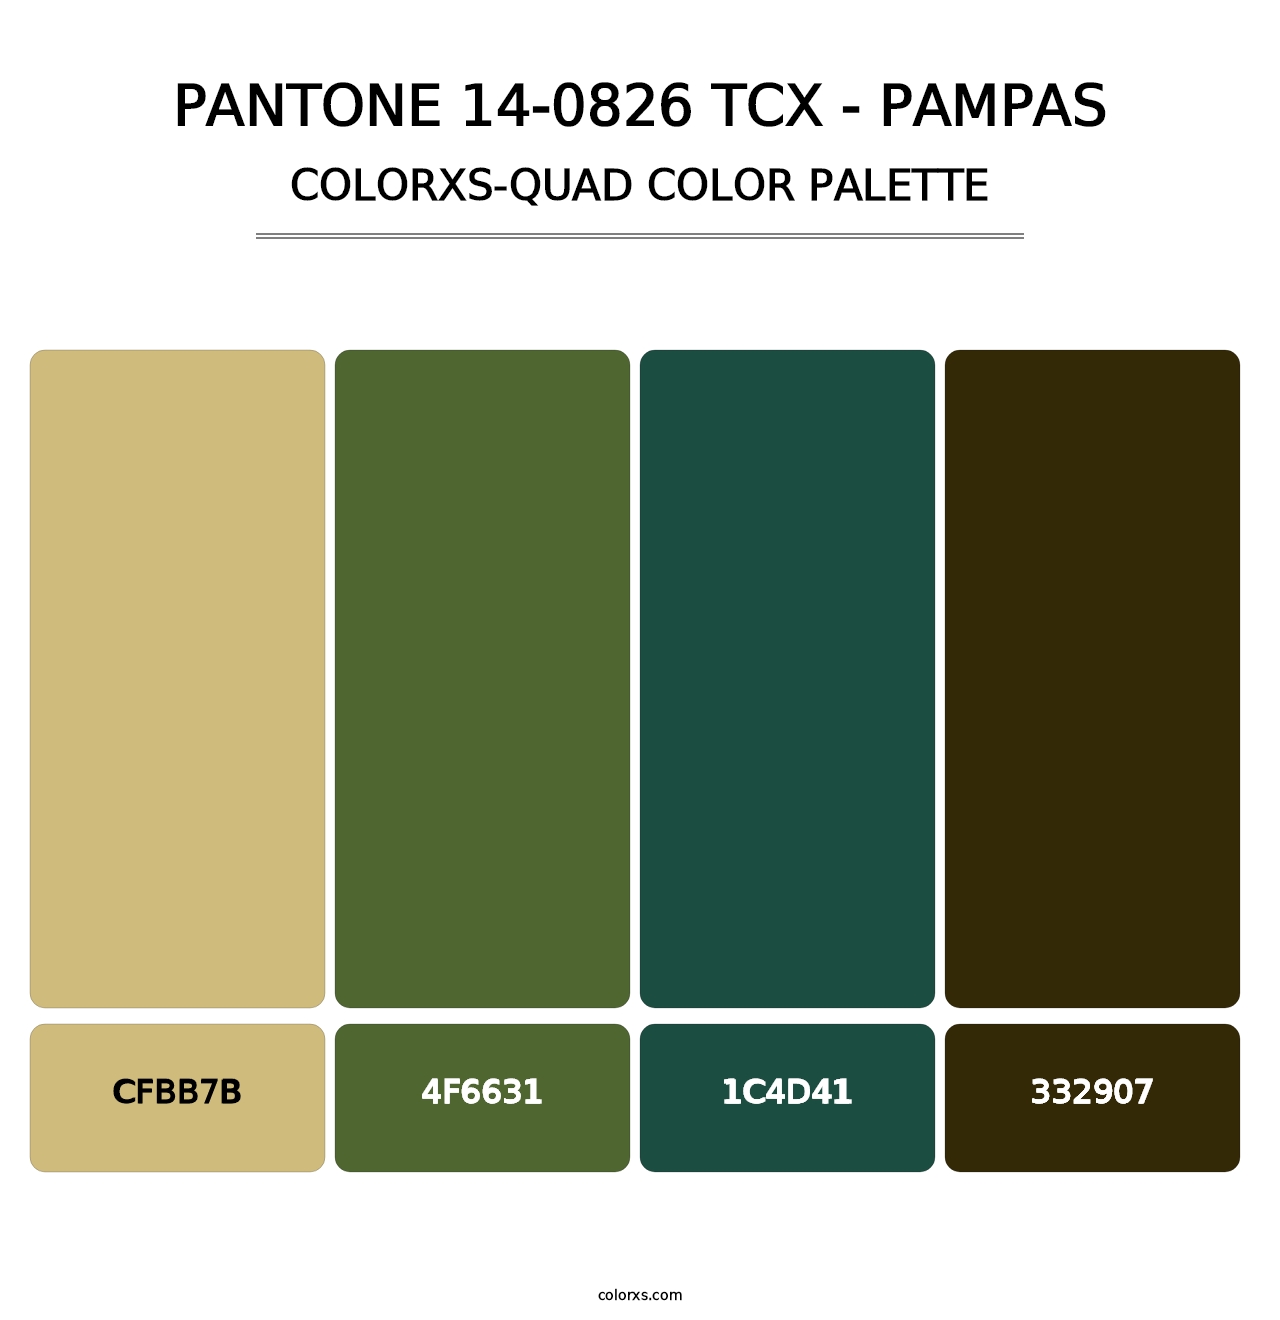 PANTONE 14-0826 TCX - Pampas - Colorxs Quad Palette